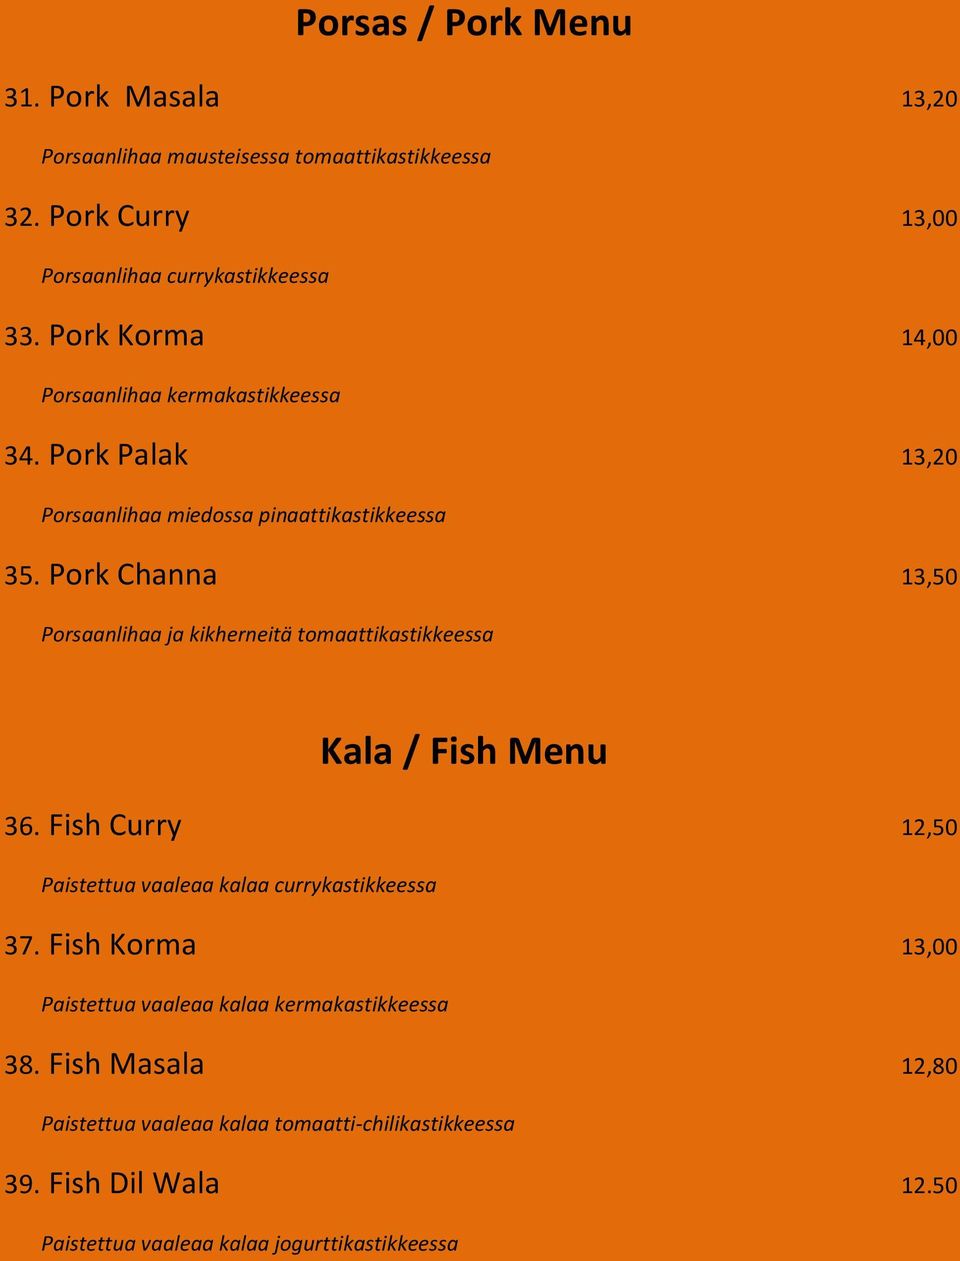 Pork Channa 13,50 Porsaanlihaa ja kikherneitä tomaattikastikkeessa Kala / Fish Menu 36. Fish Curry 12,50 Paistettua vaaleaa kalaa currykastikkeessa 37.